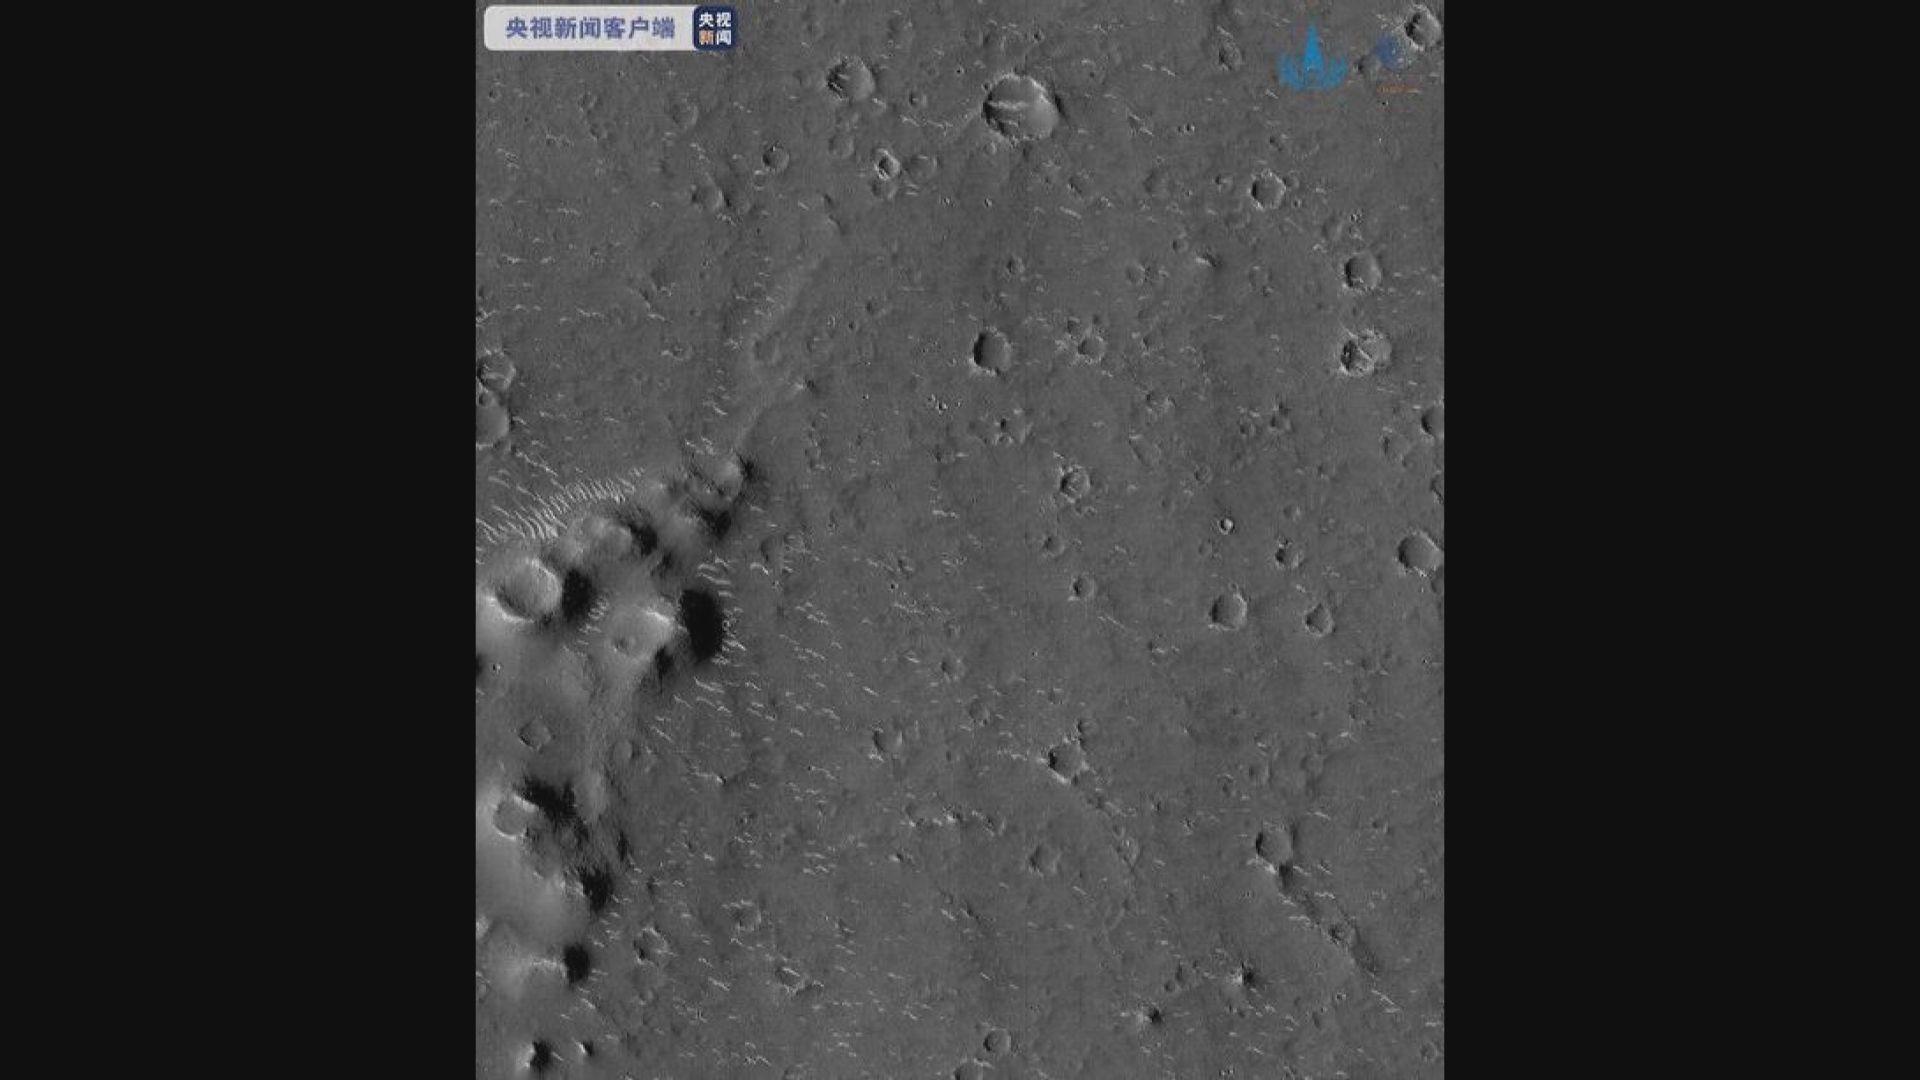 中國火星探測器天問一號拍攝火星高清影像